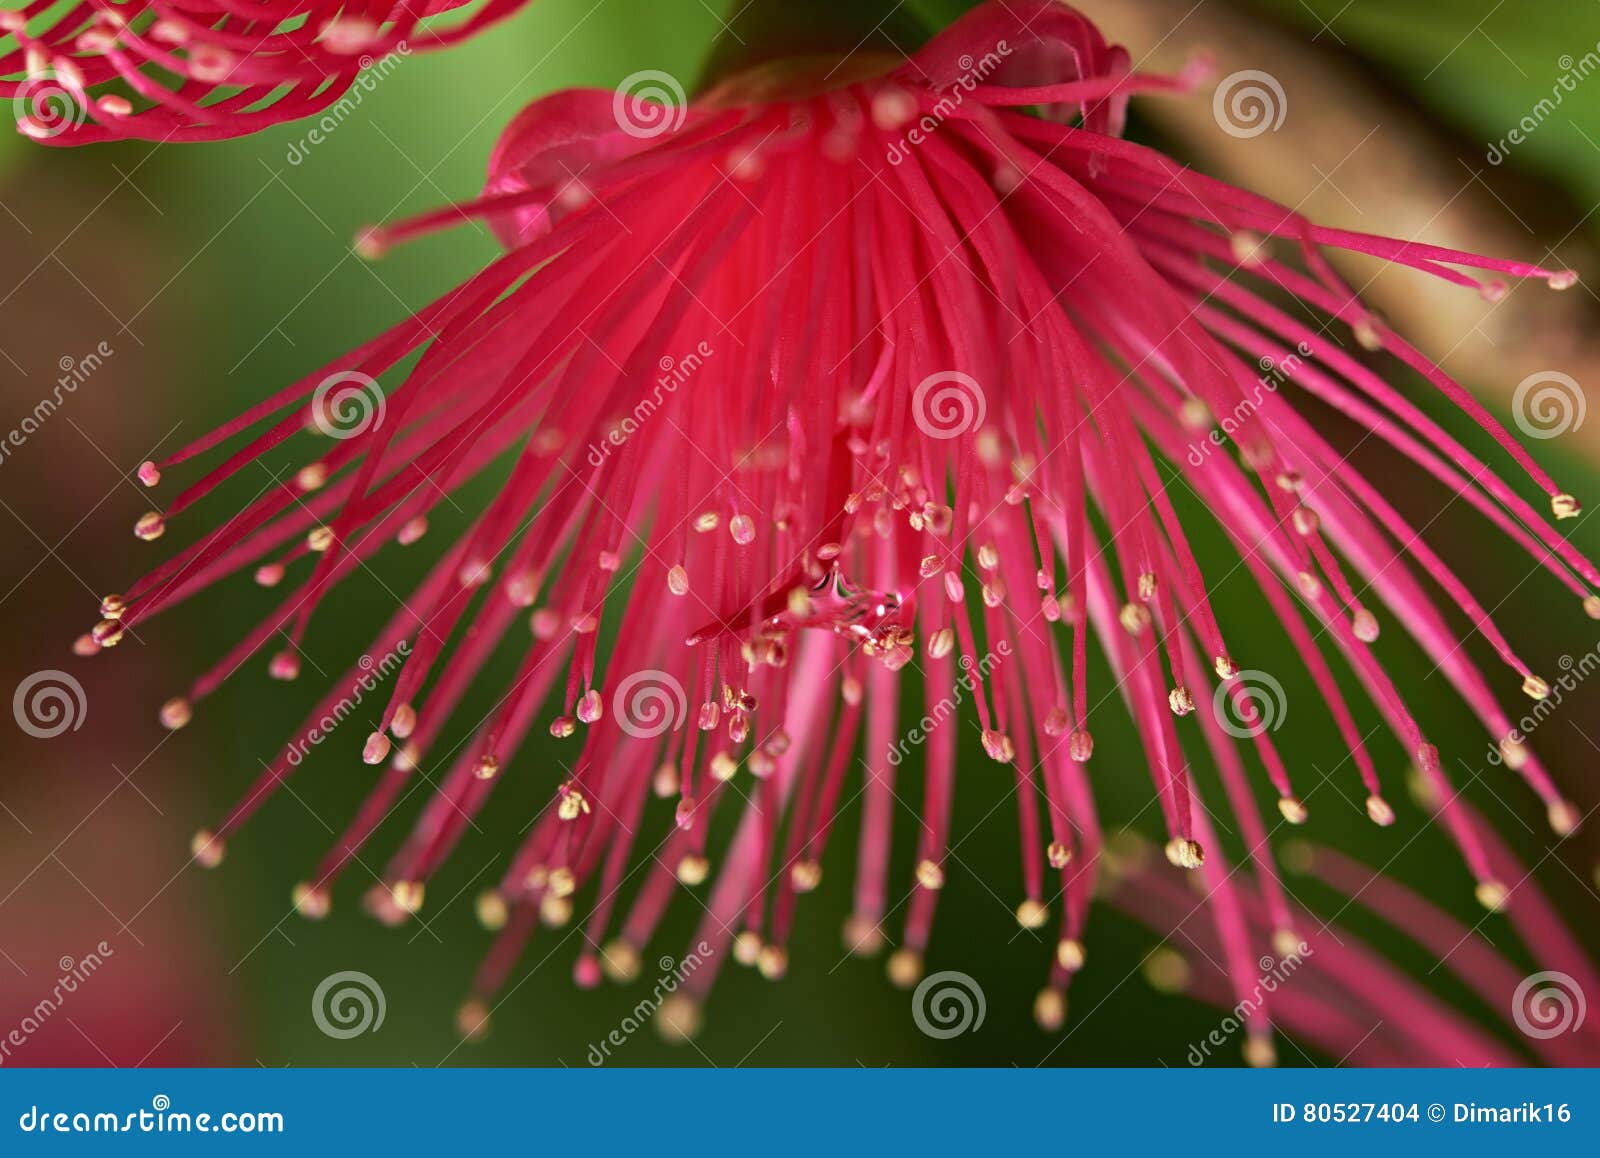 pink macro flower perote